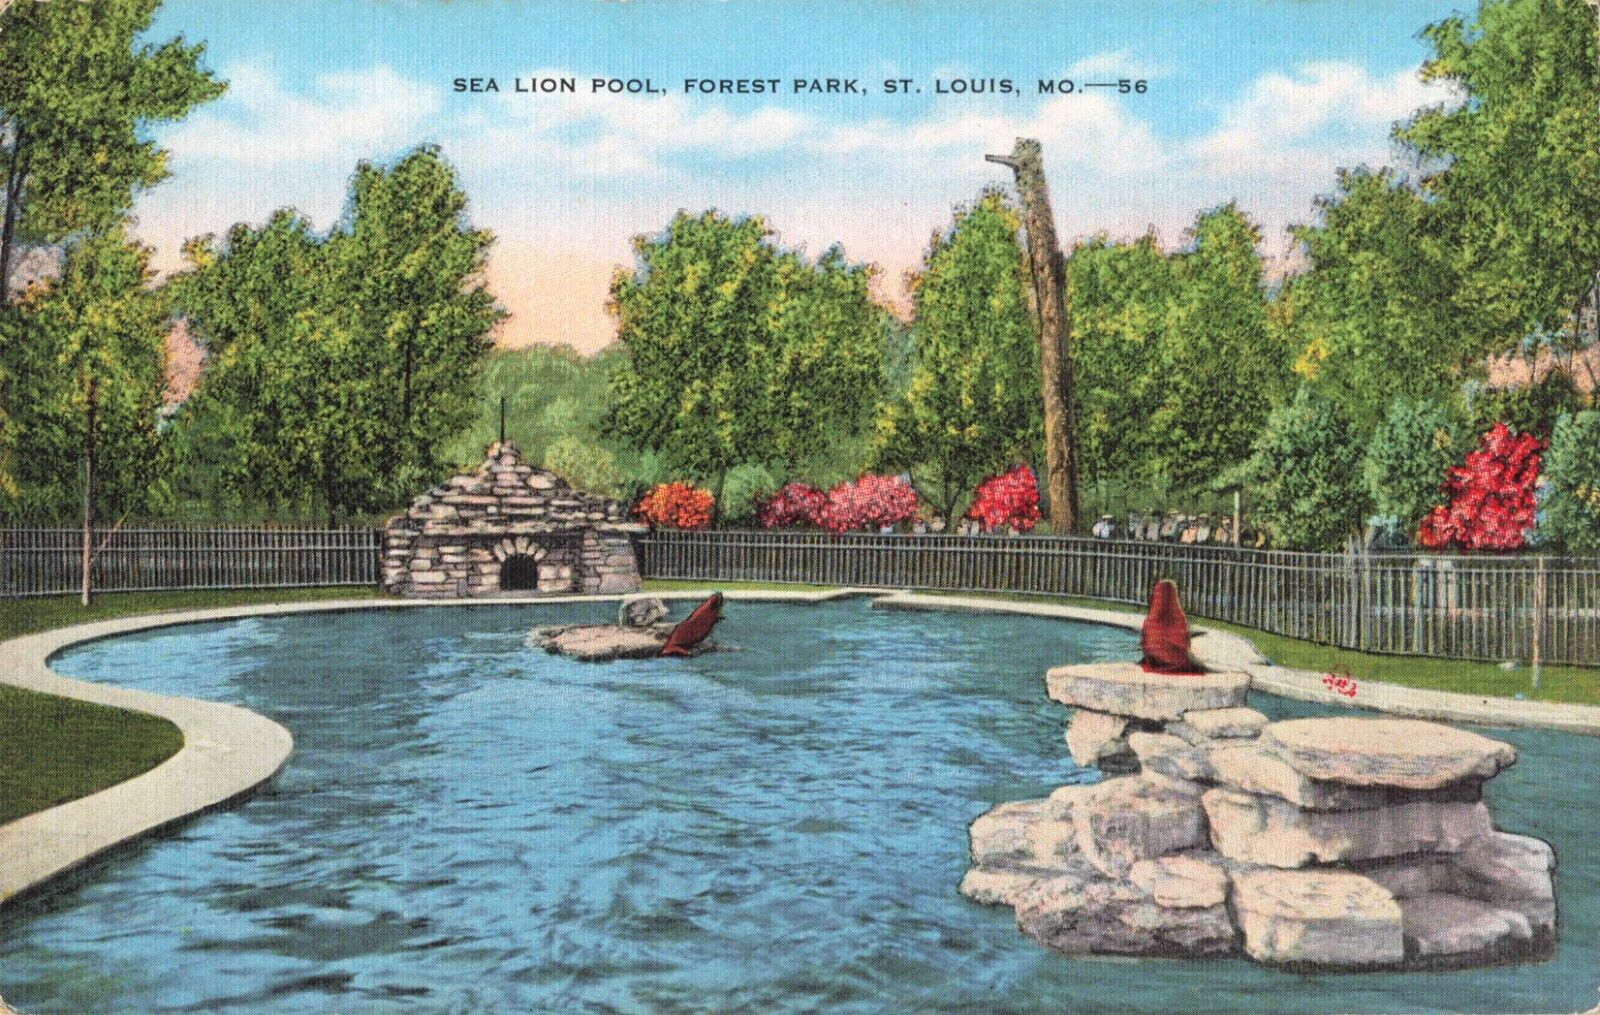 St. Louis MO Missouri, St. Louis Zoo Sea Lion Pool Forest Park, Vintage Postcard